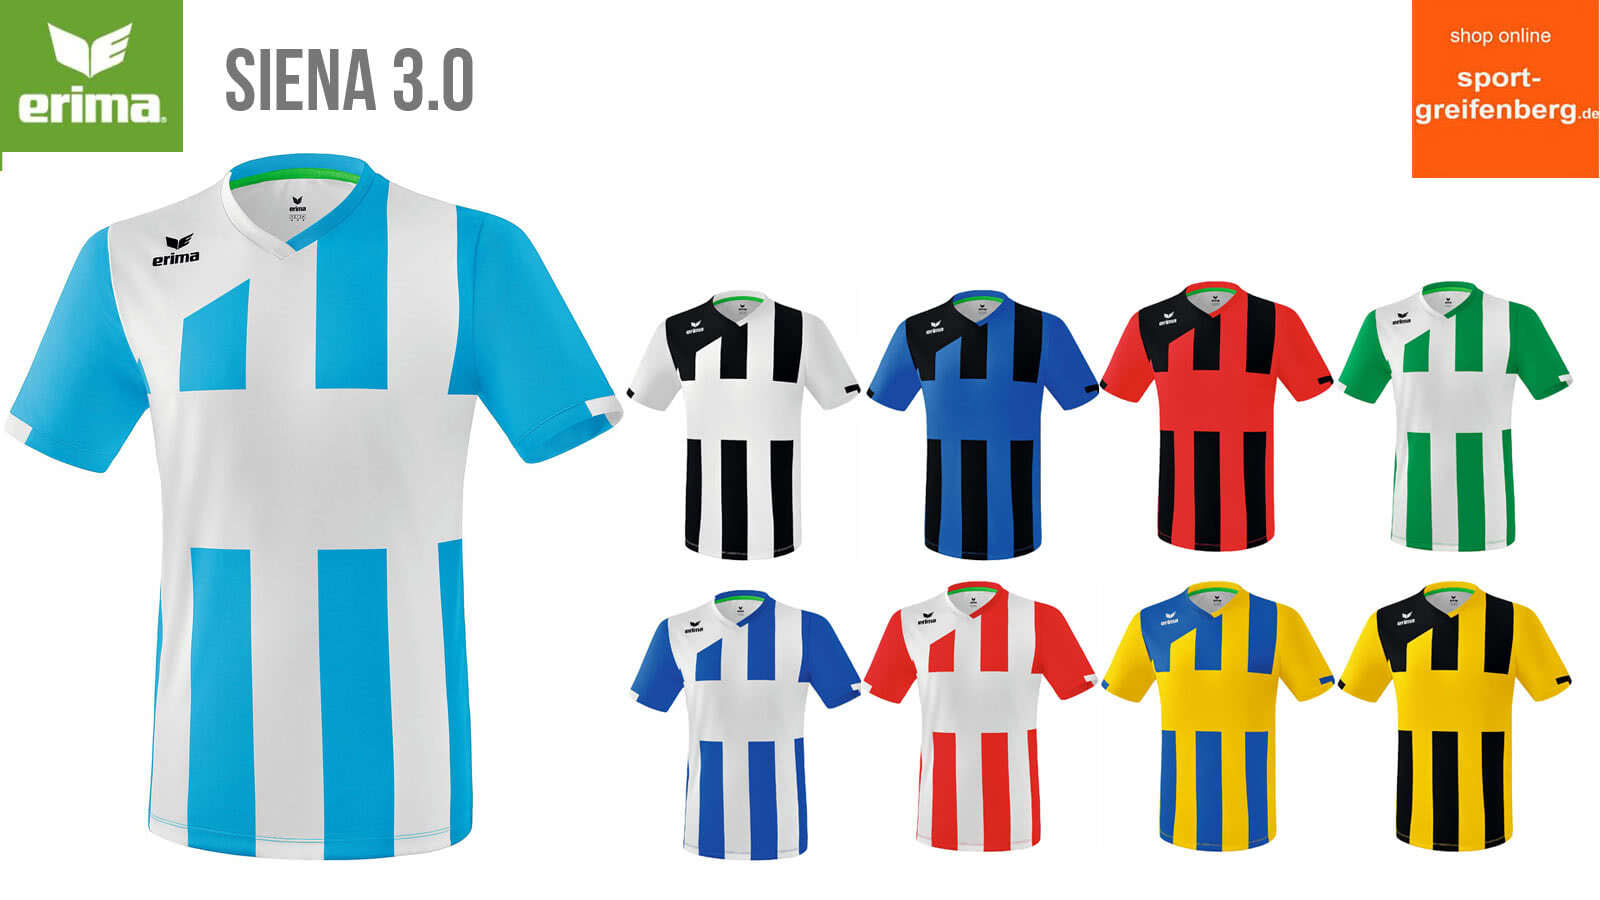 Das Erima Siena 3.0 Trikot als Fußball Trikot mit Streifen